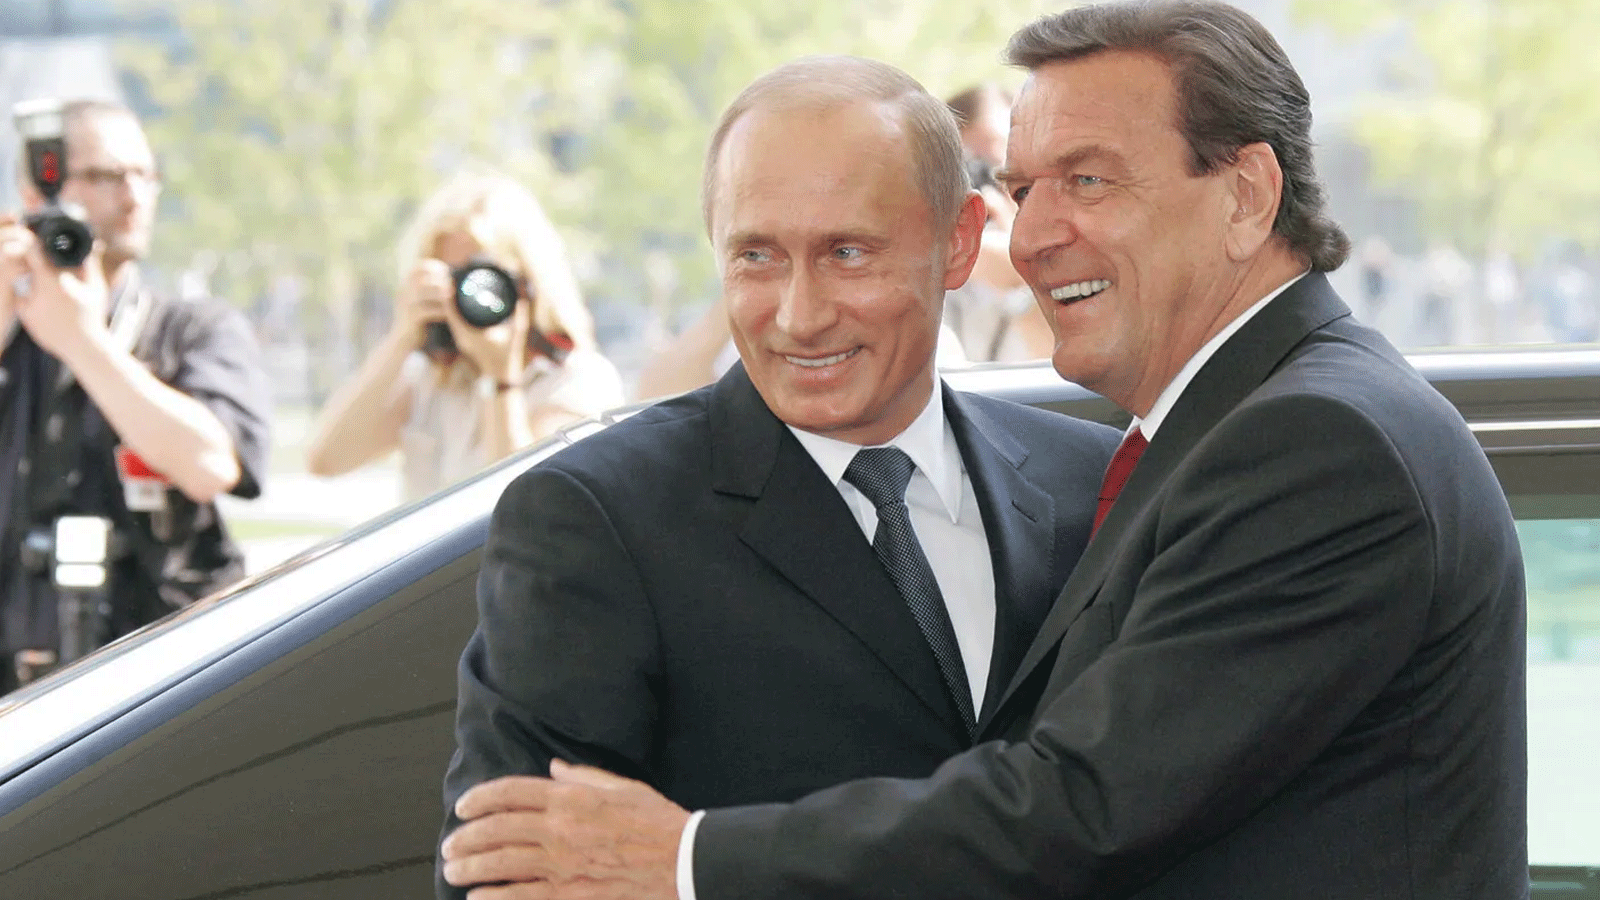  المستشار الألماني غيرهارد شرودر يُحيي الرئيس الروسي فلاديمير بوتين في العام 2005